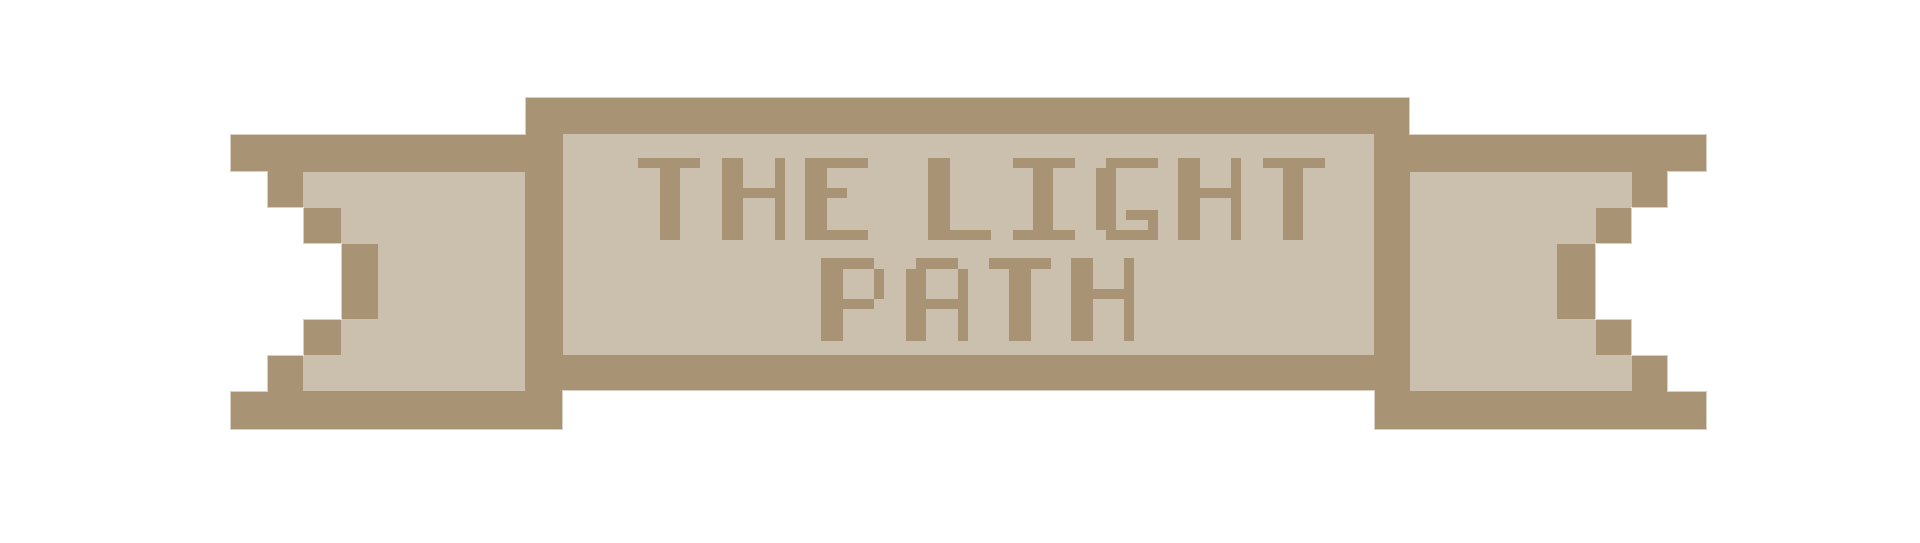 The Light Path